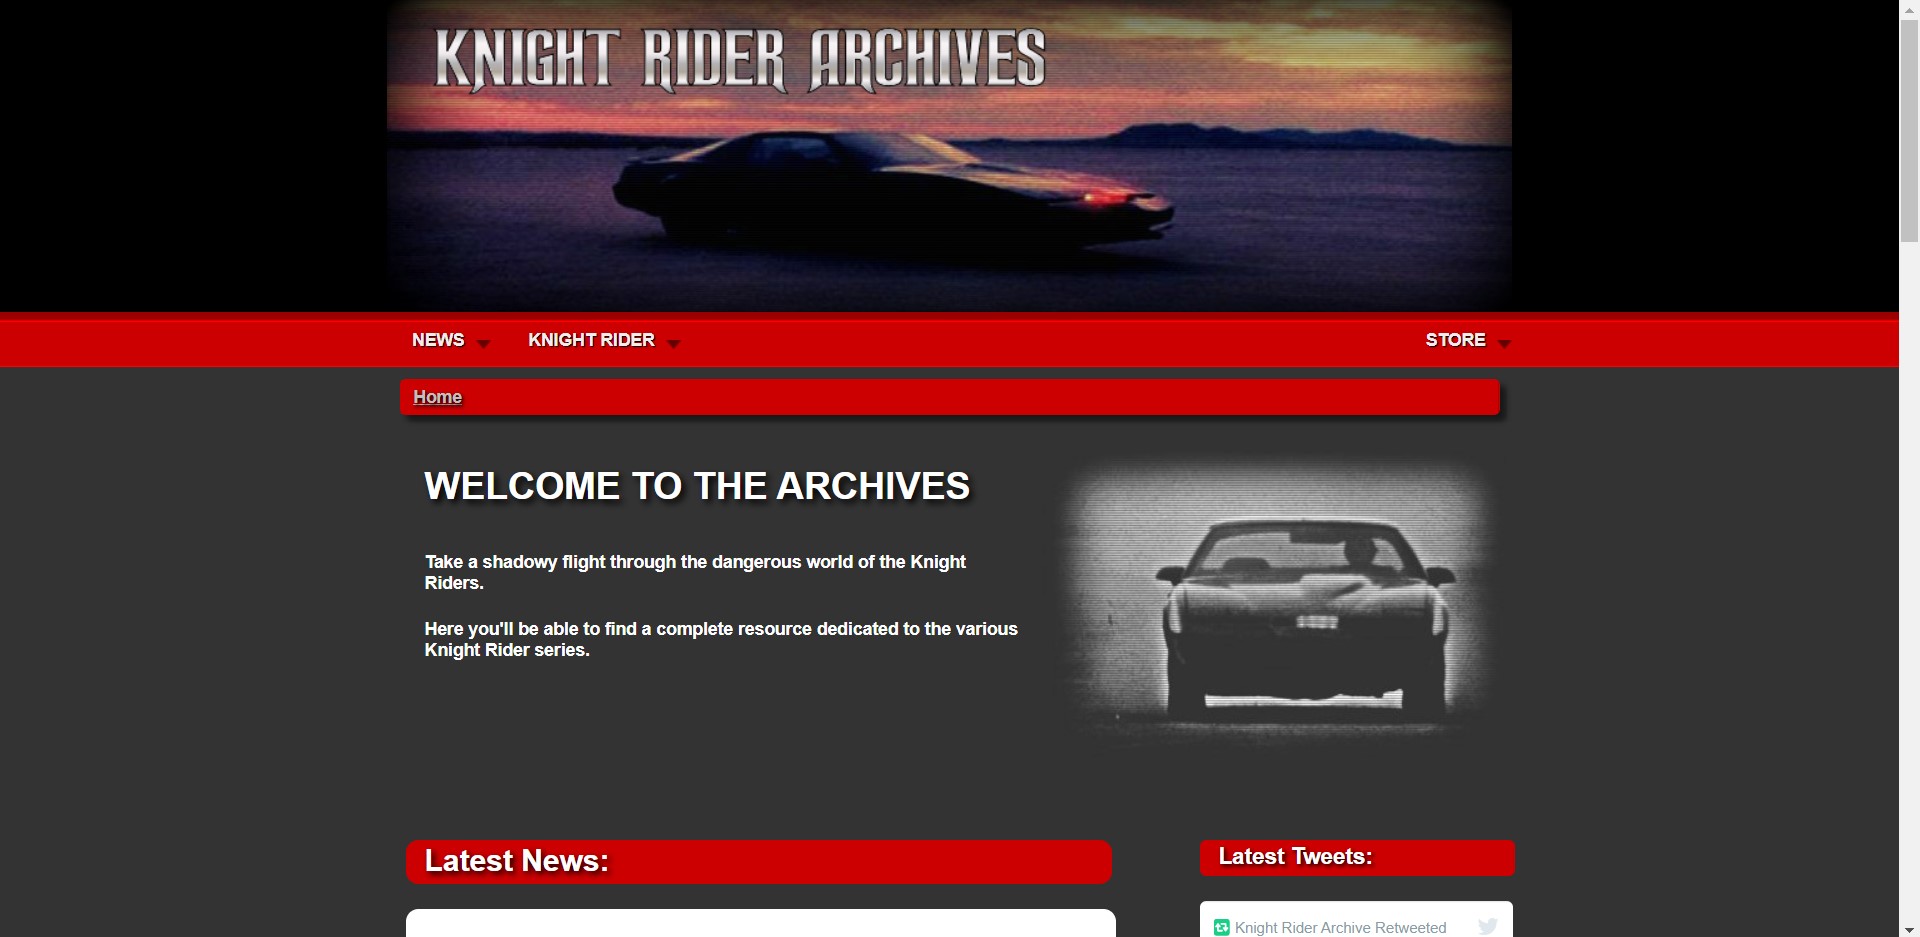 Knight Rider Archives - Stránka o originálnom seriáli